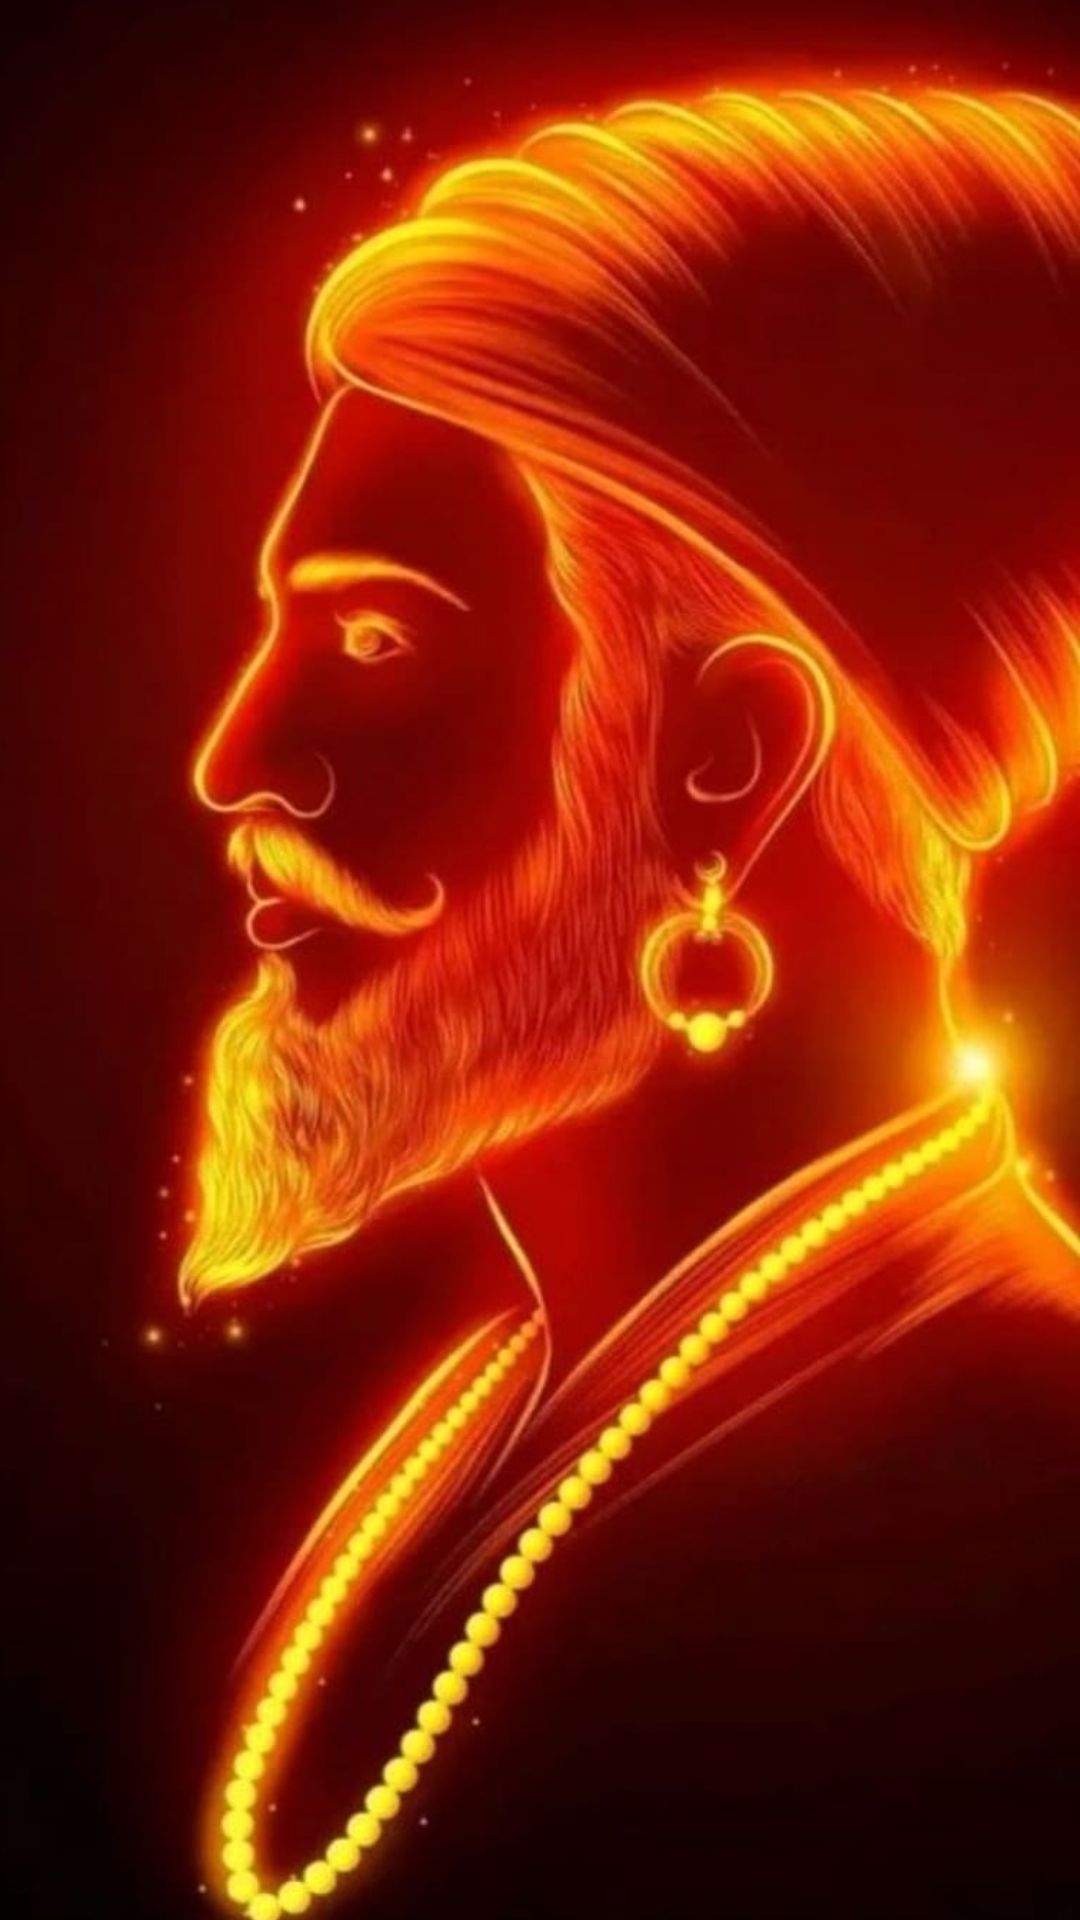 भारत के इन हिंदू राजाओं से कांपते थे दुश्मन, नाम लेते ही झुक जाता है सिर